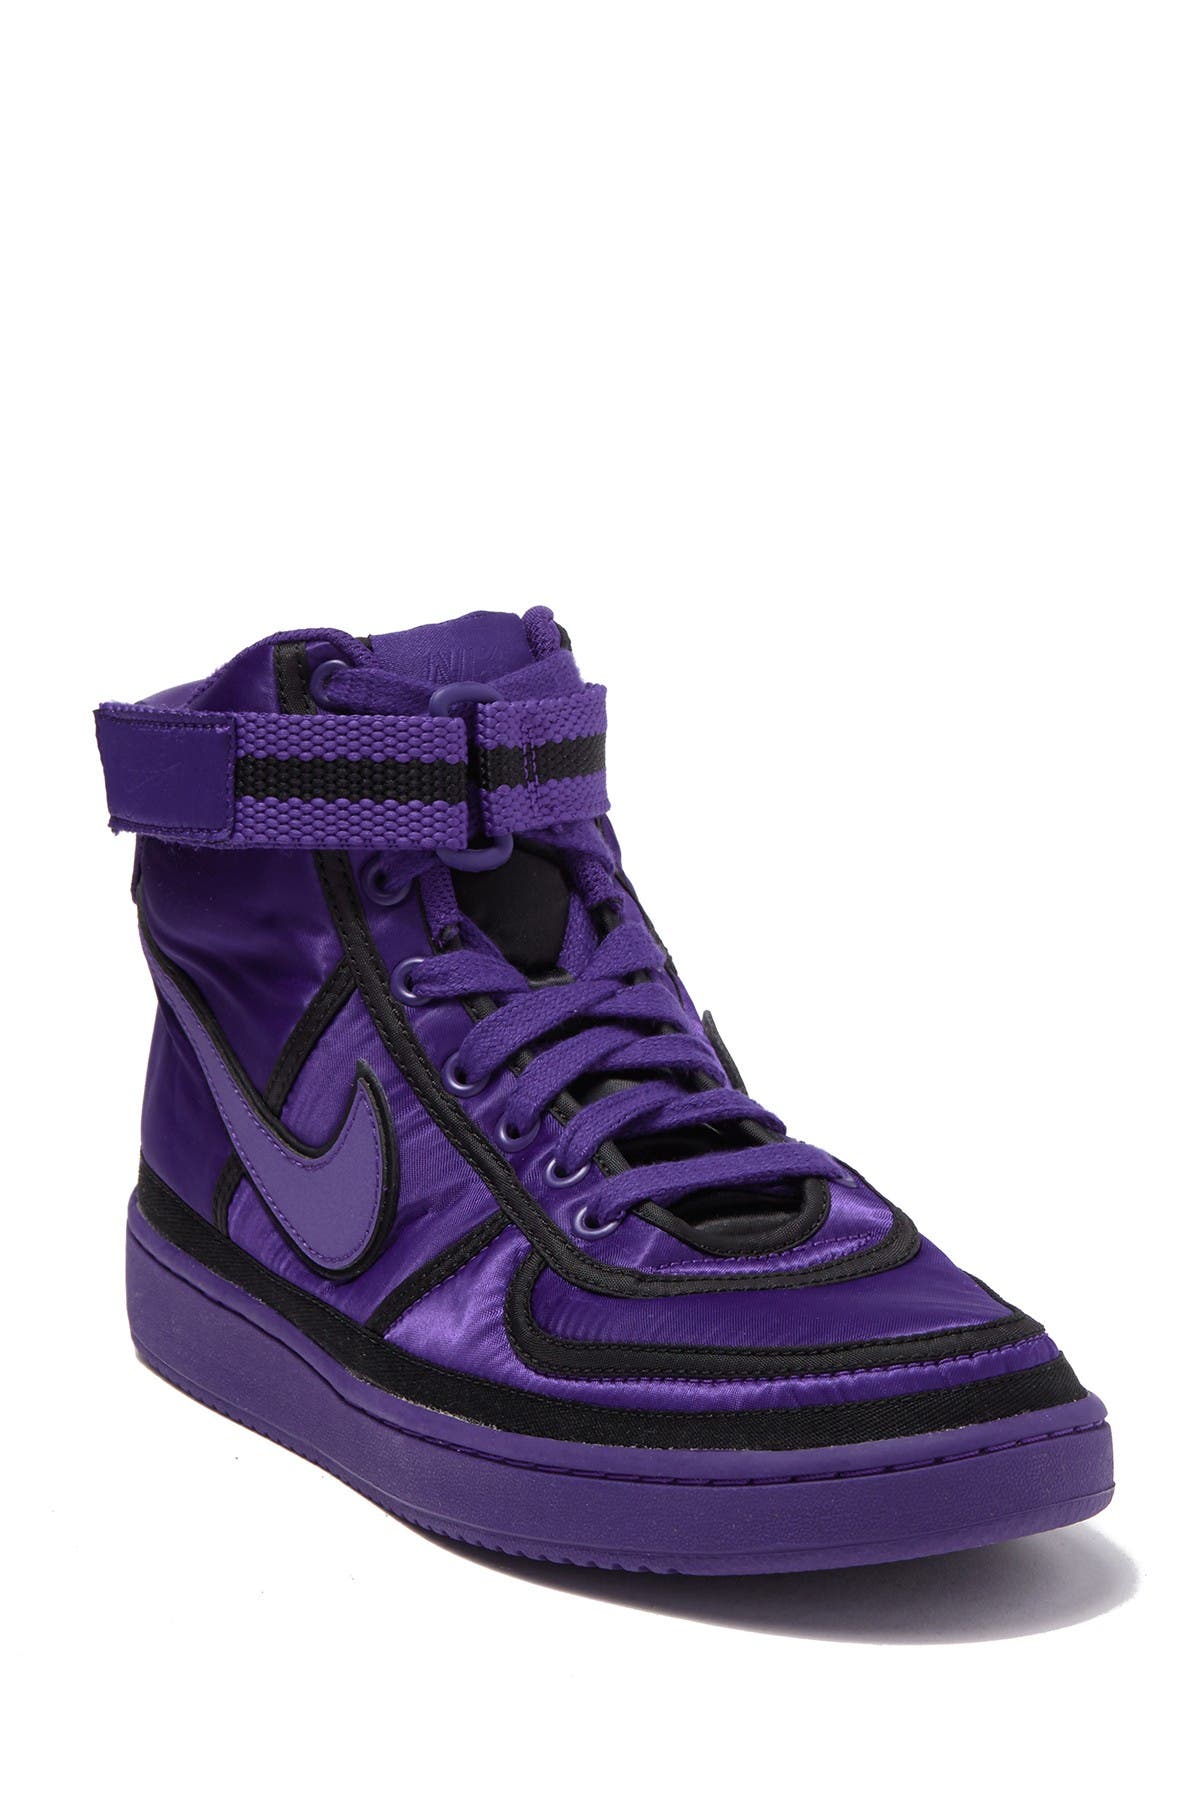 purple high top sneakers